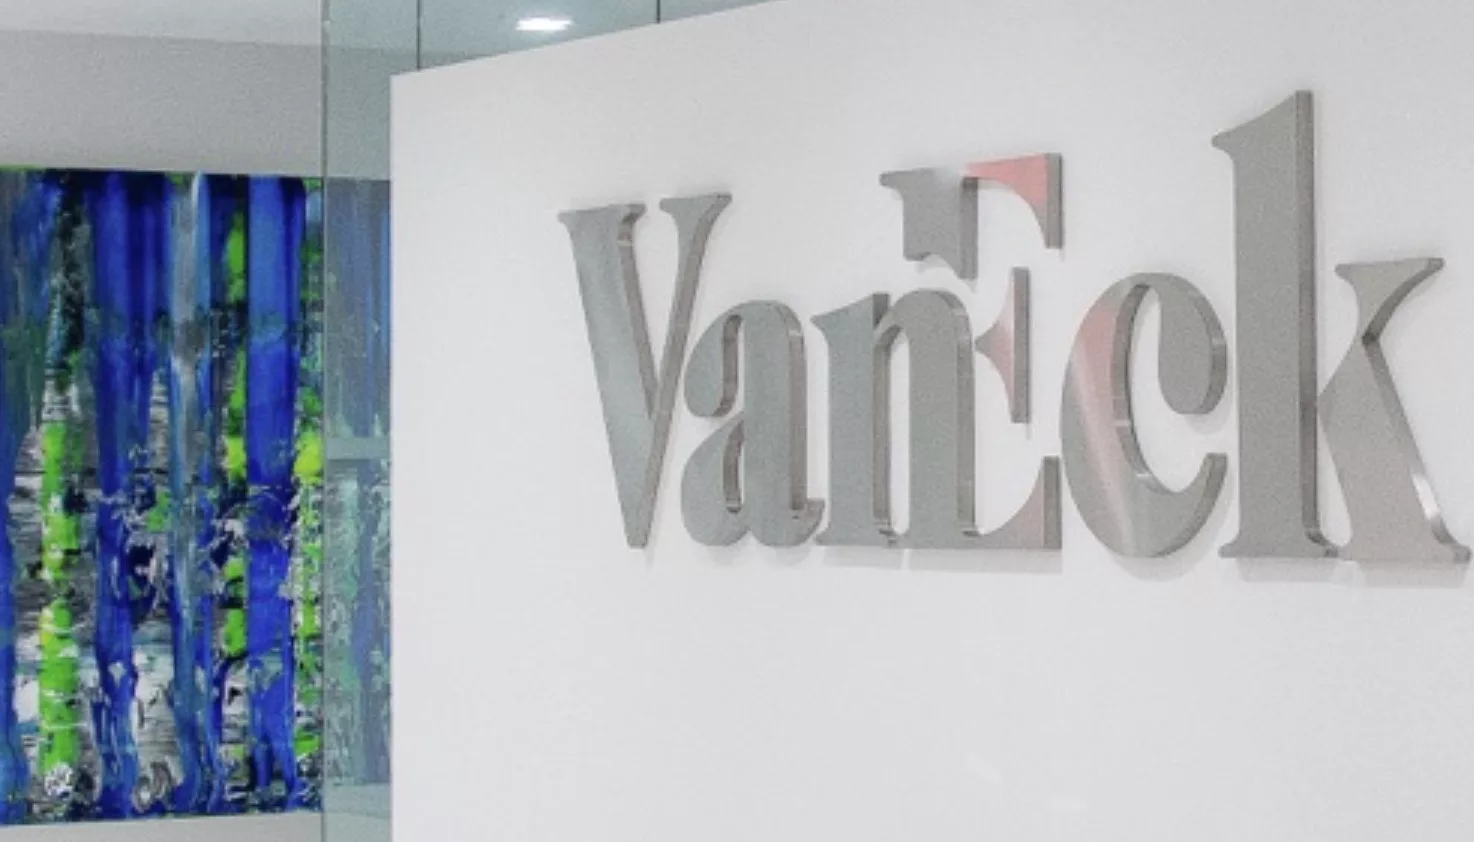 VanEck Bought Bitcoin For Their ETF